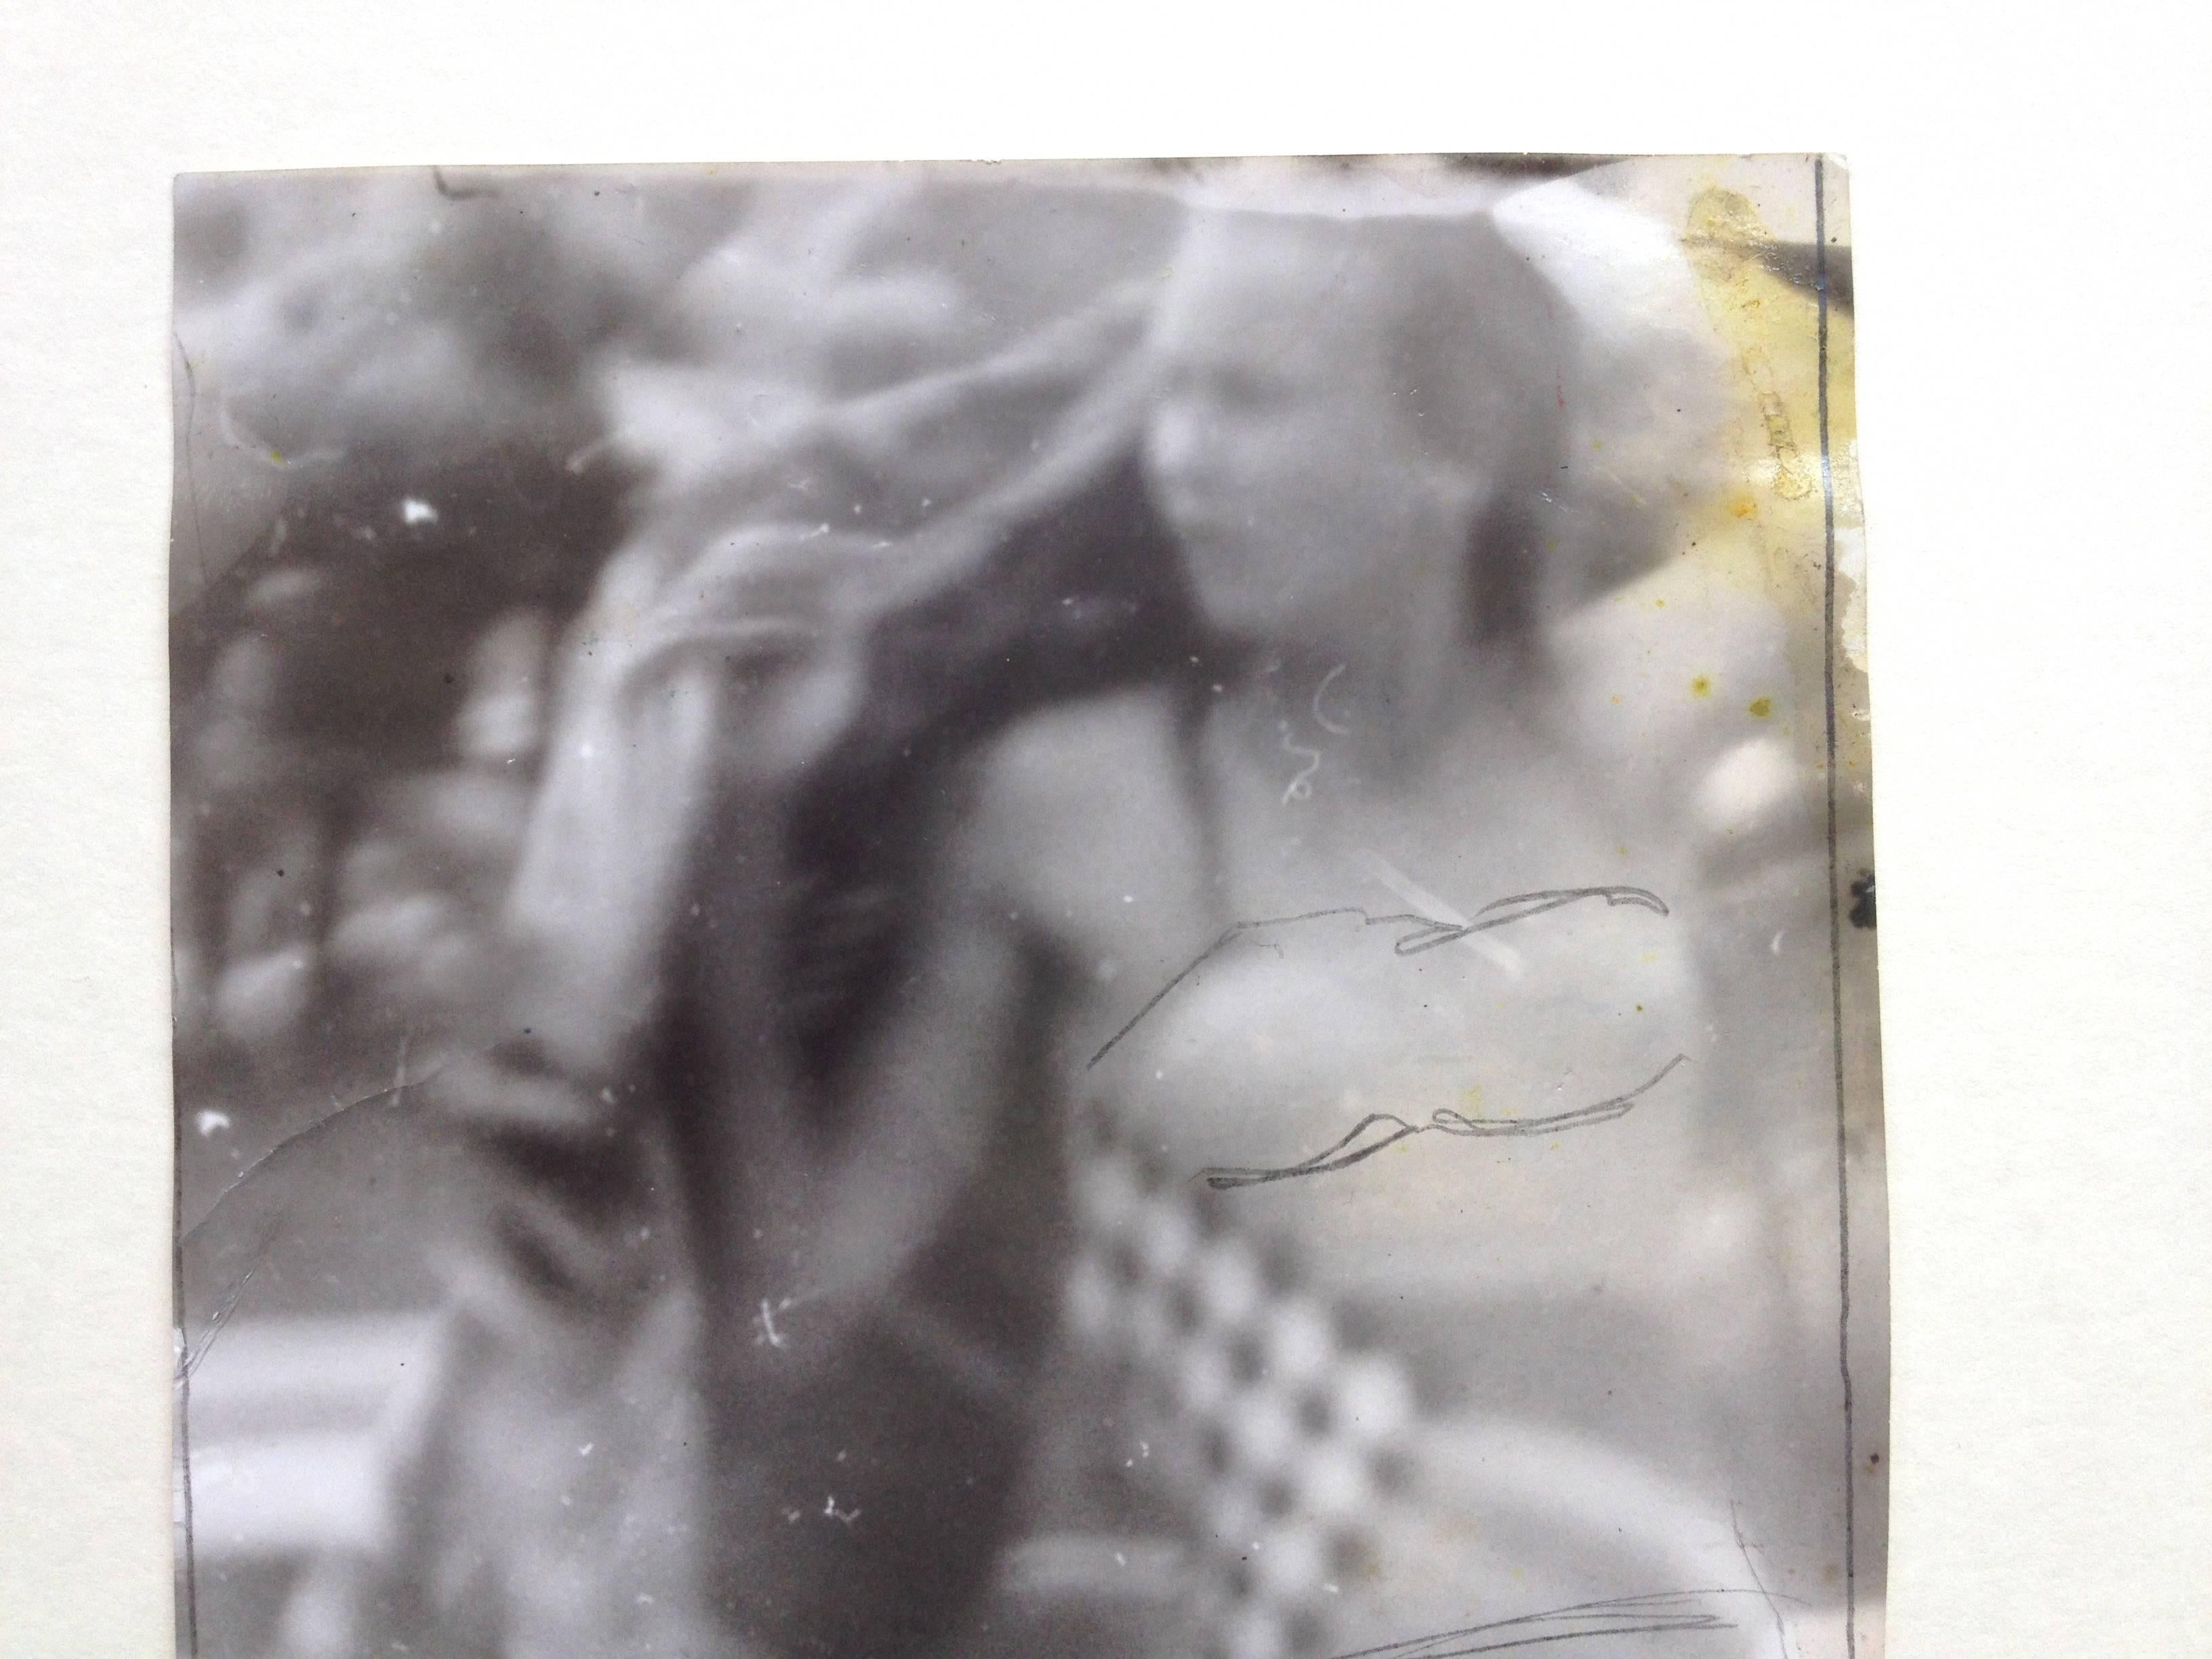 Original Miroslav Tichý s/w Fotografie. 
Frau im Bikini. 17,5cm x 10,5cm
Einzigartiger Vintage-Druck auf Papier mit einer Zeichnung des Künstlers.

Miroslav Tichý war ein Fotograf, der von den 1960er Jahren bis 1985 in seiner Heimatstadt Kyjov in